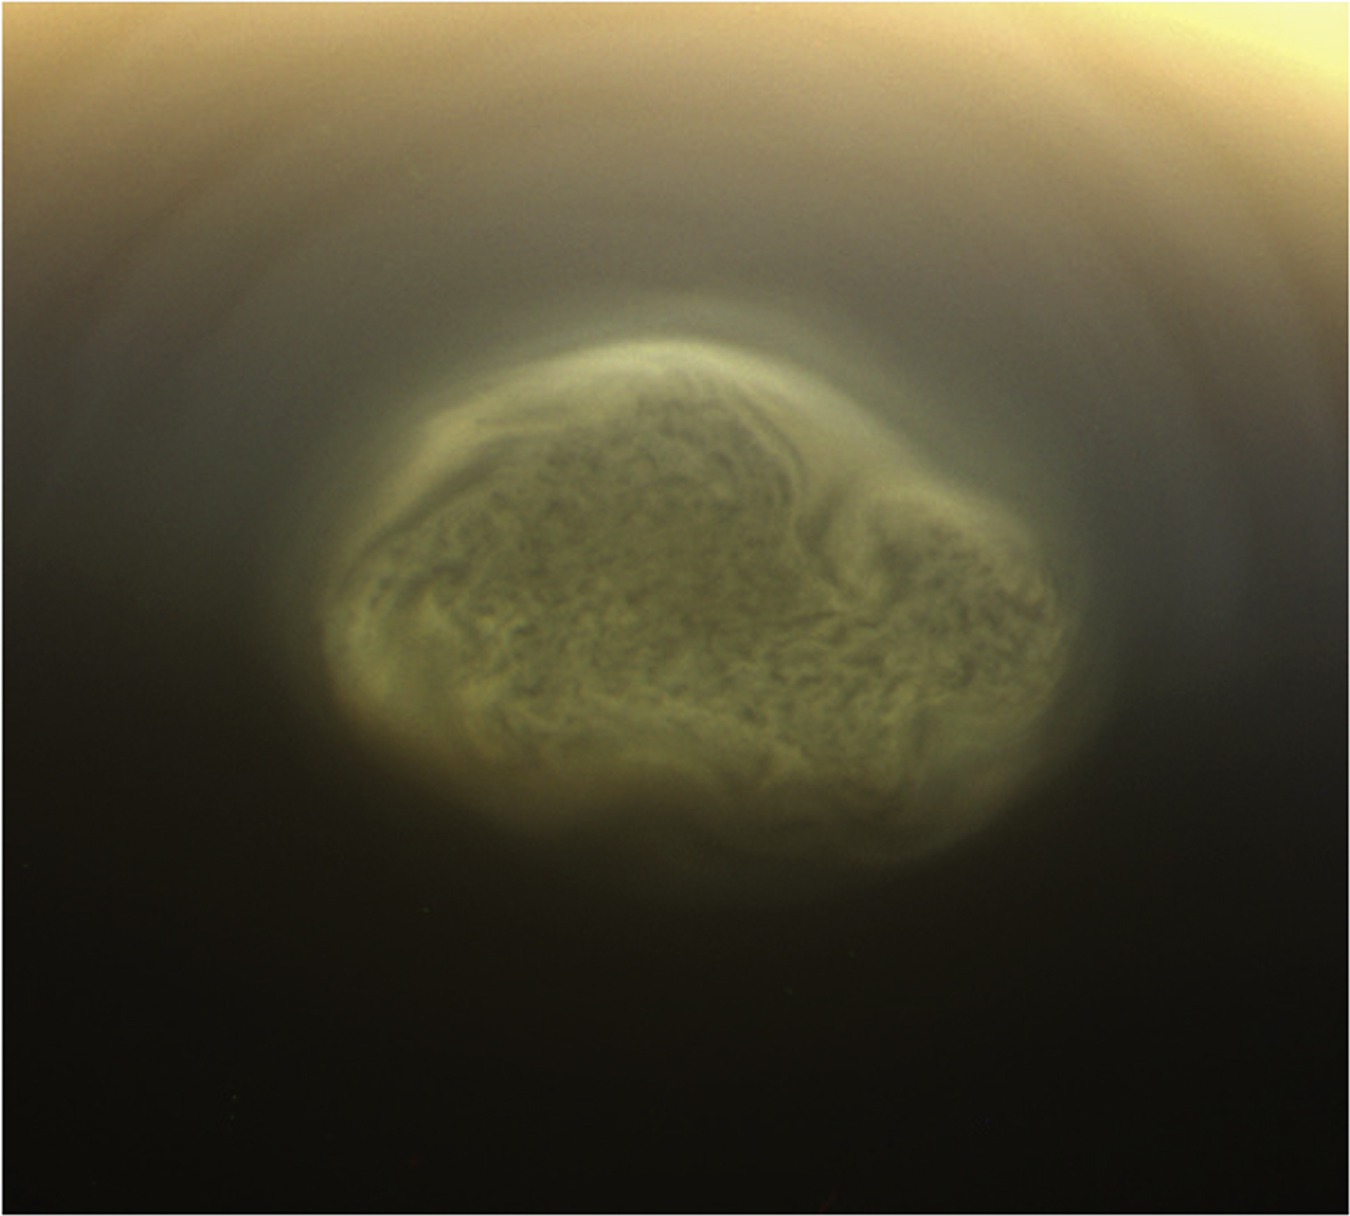 卡西尼號於2012年拍攝的泰坦南極渦旋雲。該雲大小達48萬公里，可能由氰化氫冰或液體組成。                                          圖片鳴謝: NASA/JPL/Space Science Institute.